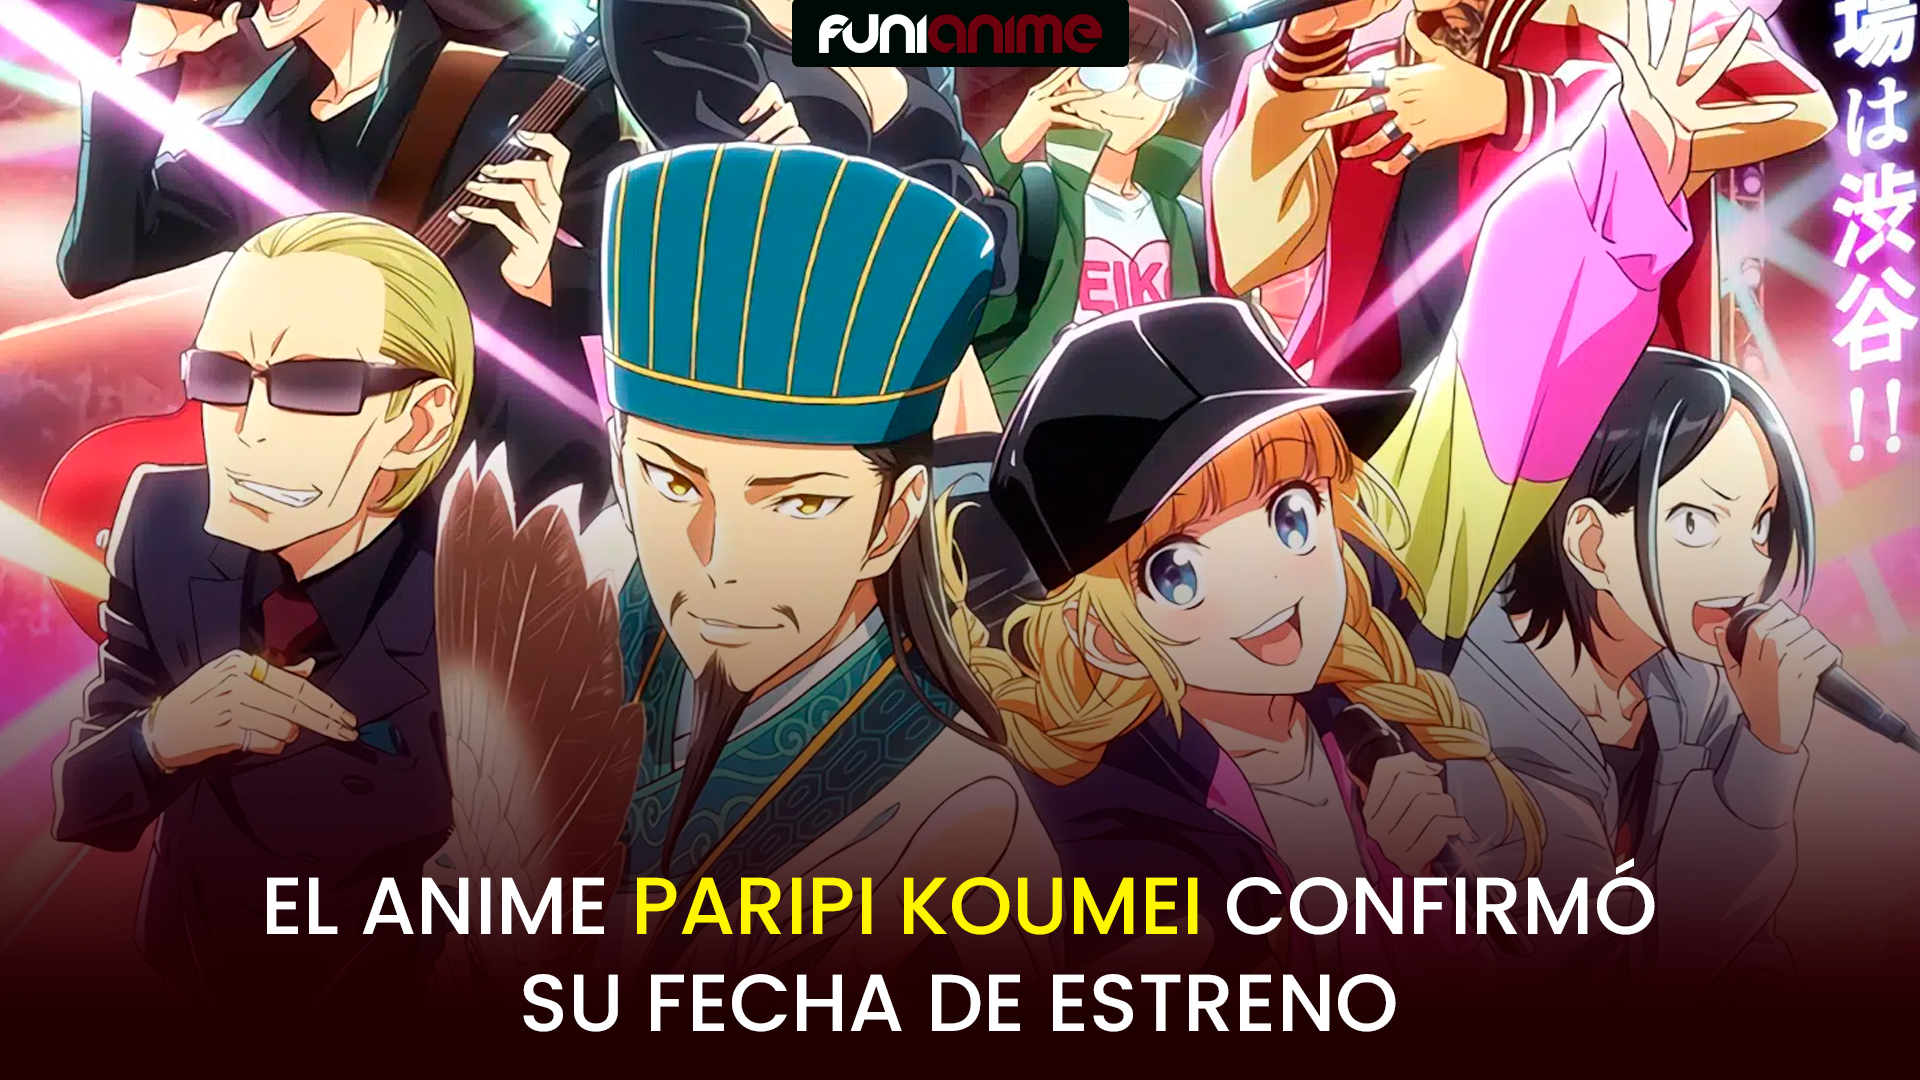 El anime Paripi Koumei confirmó su fecha de estreno - FUNiAnime LA